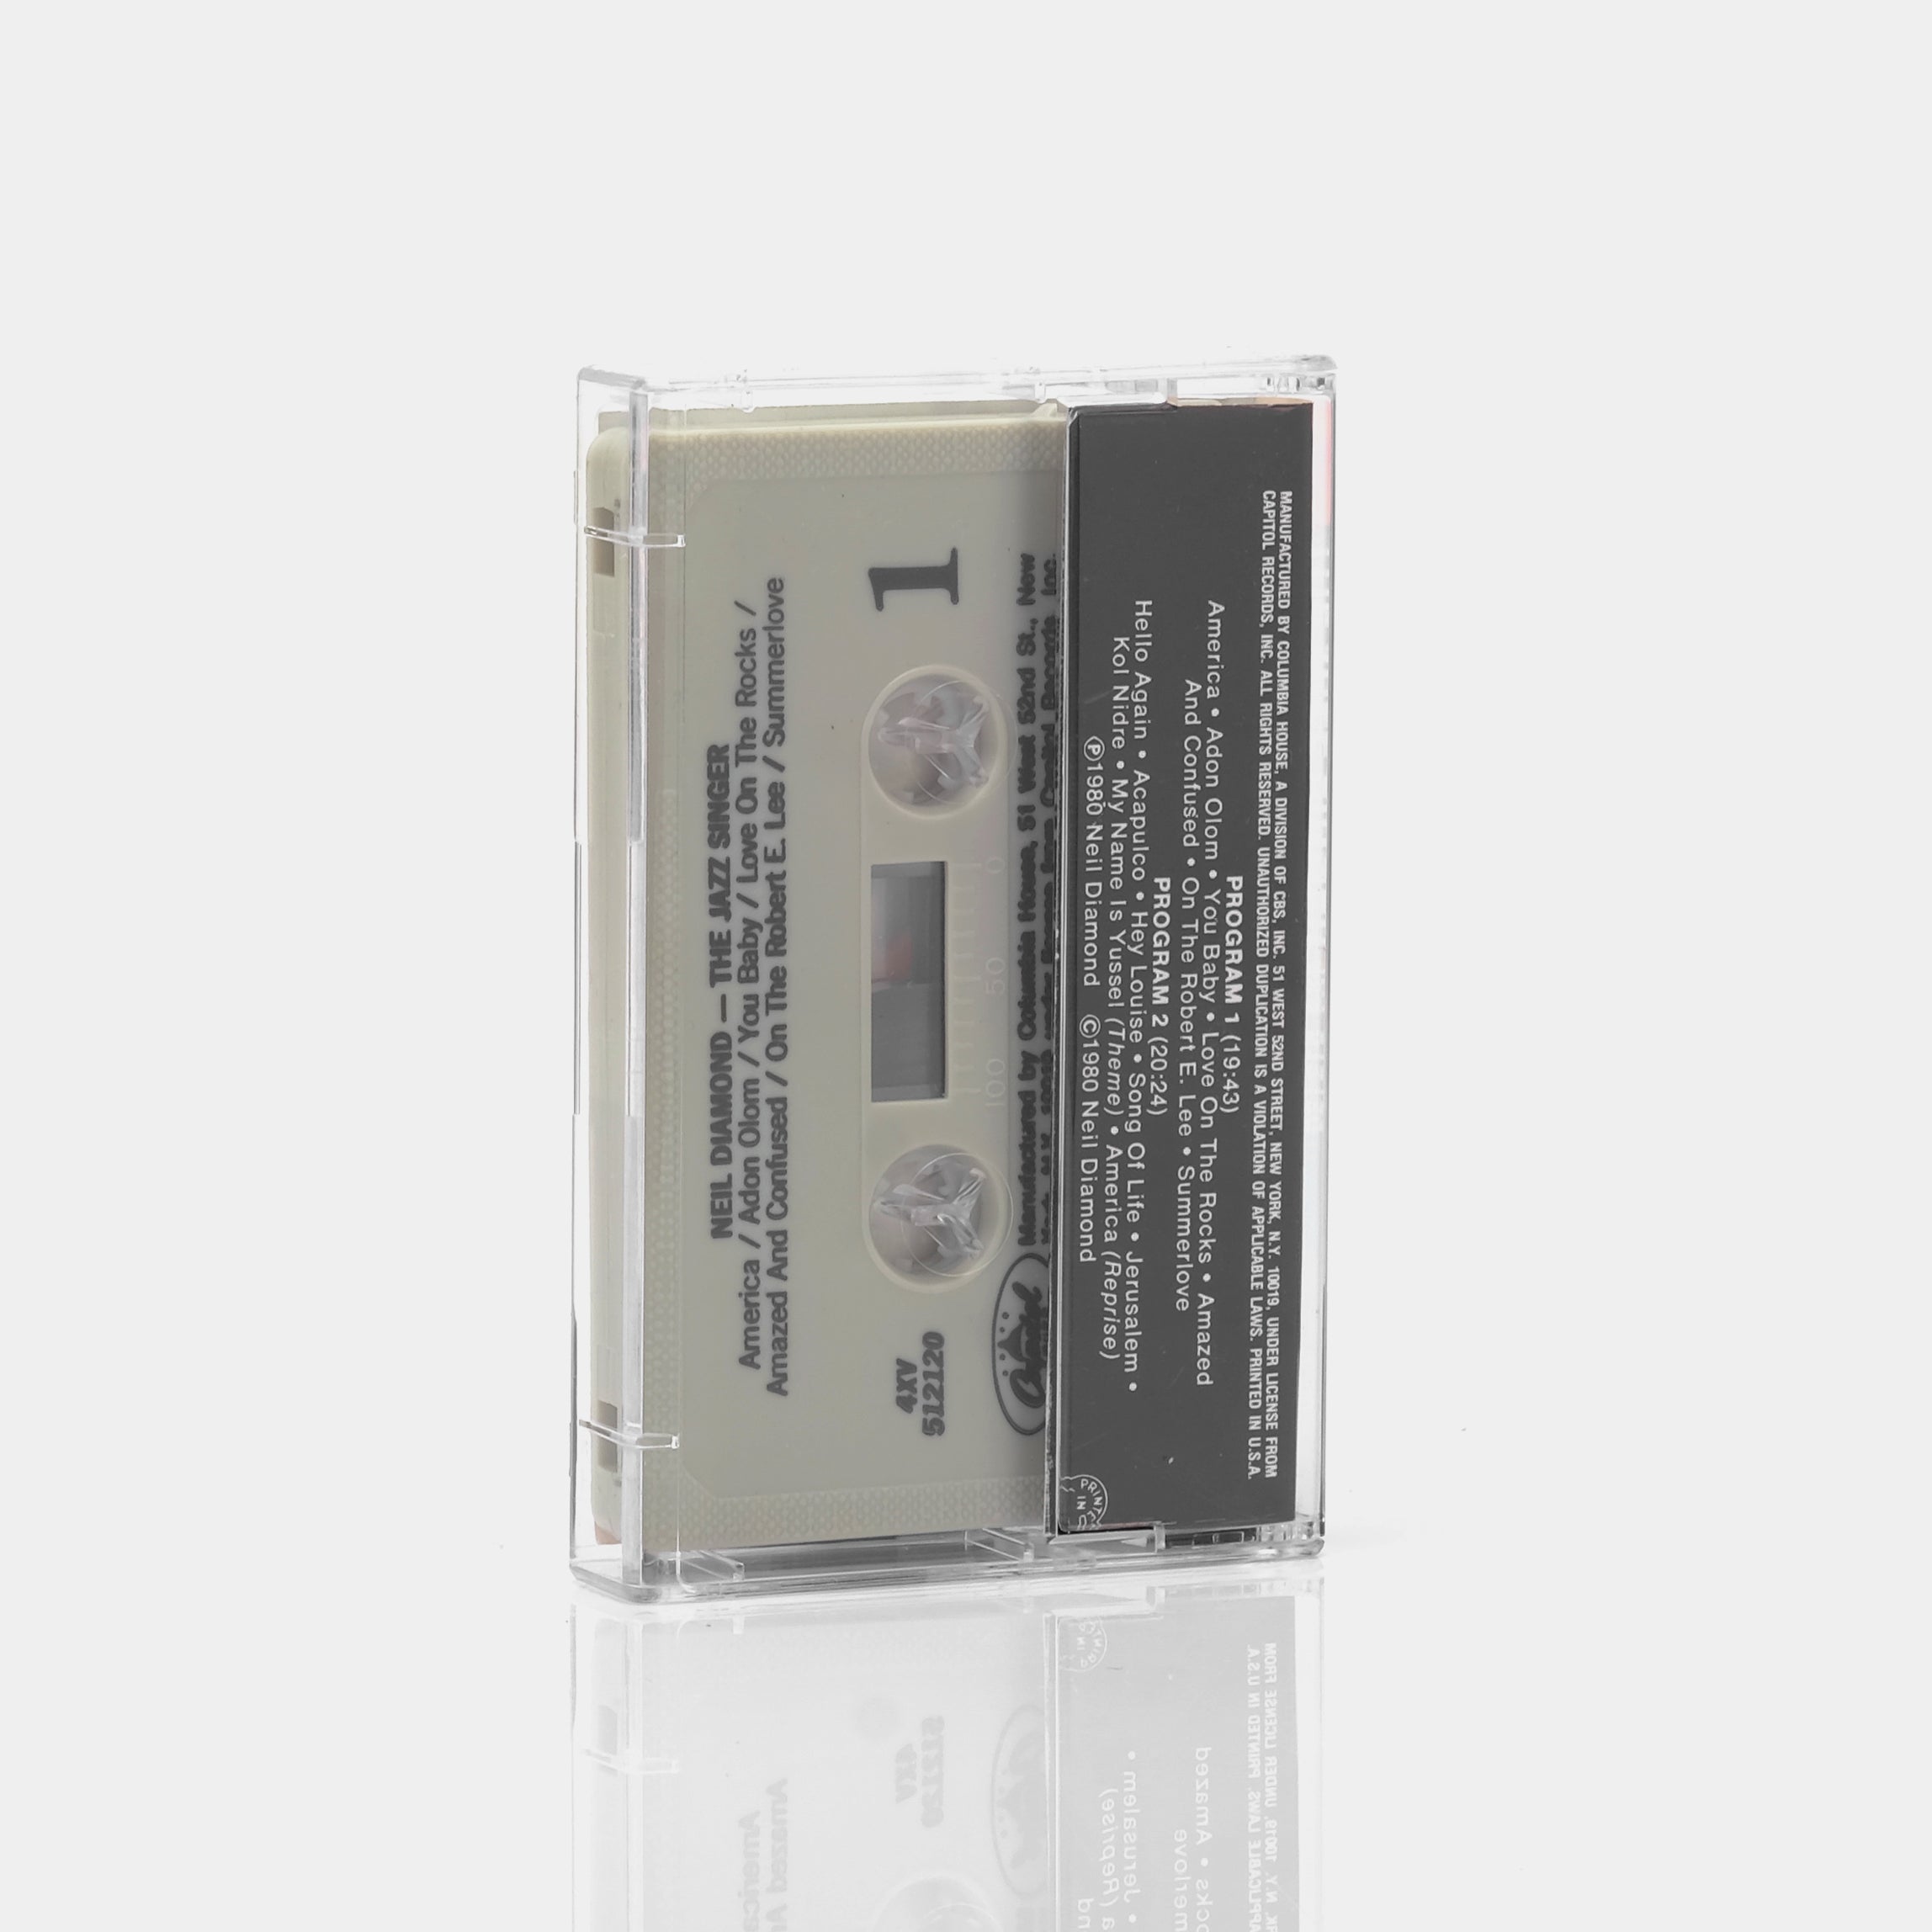 Neil Diamond - The Jazz Singer Cassette Tape